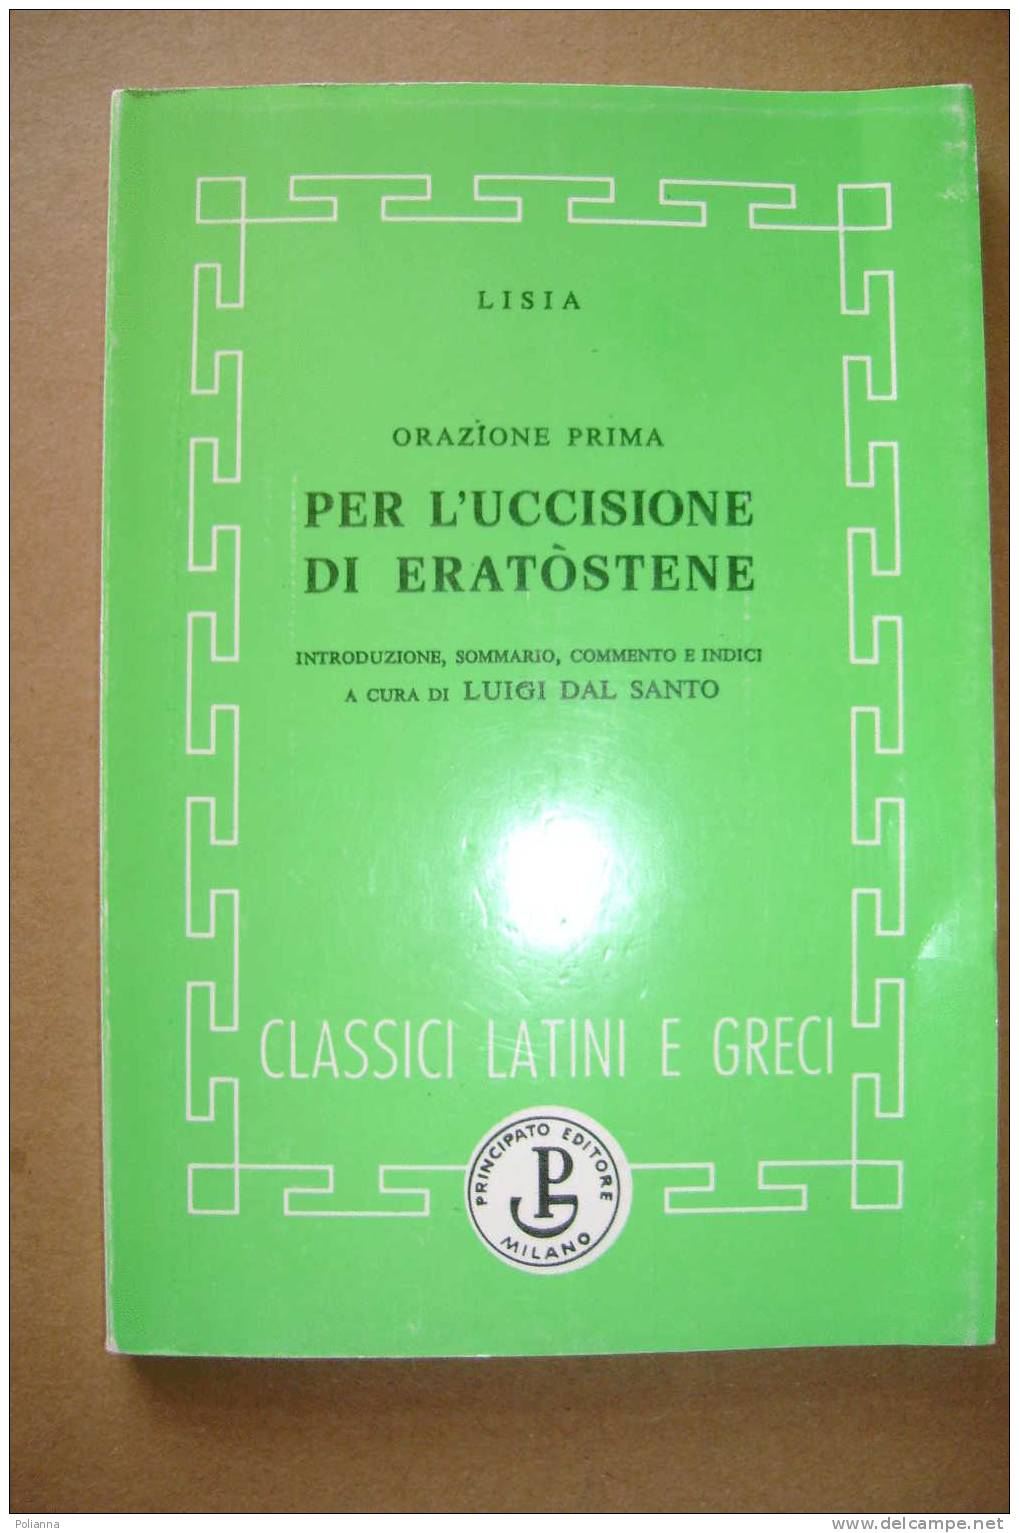 PAI/19 Classici Latini E Greci : Lisia Oraz. I PER L´UCCISIONE DI ERASTOTENE Principato 1993 - Classic